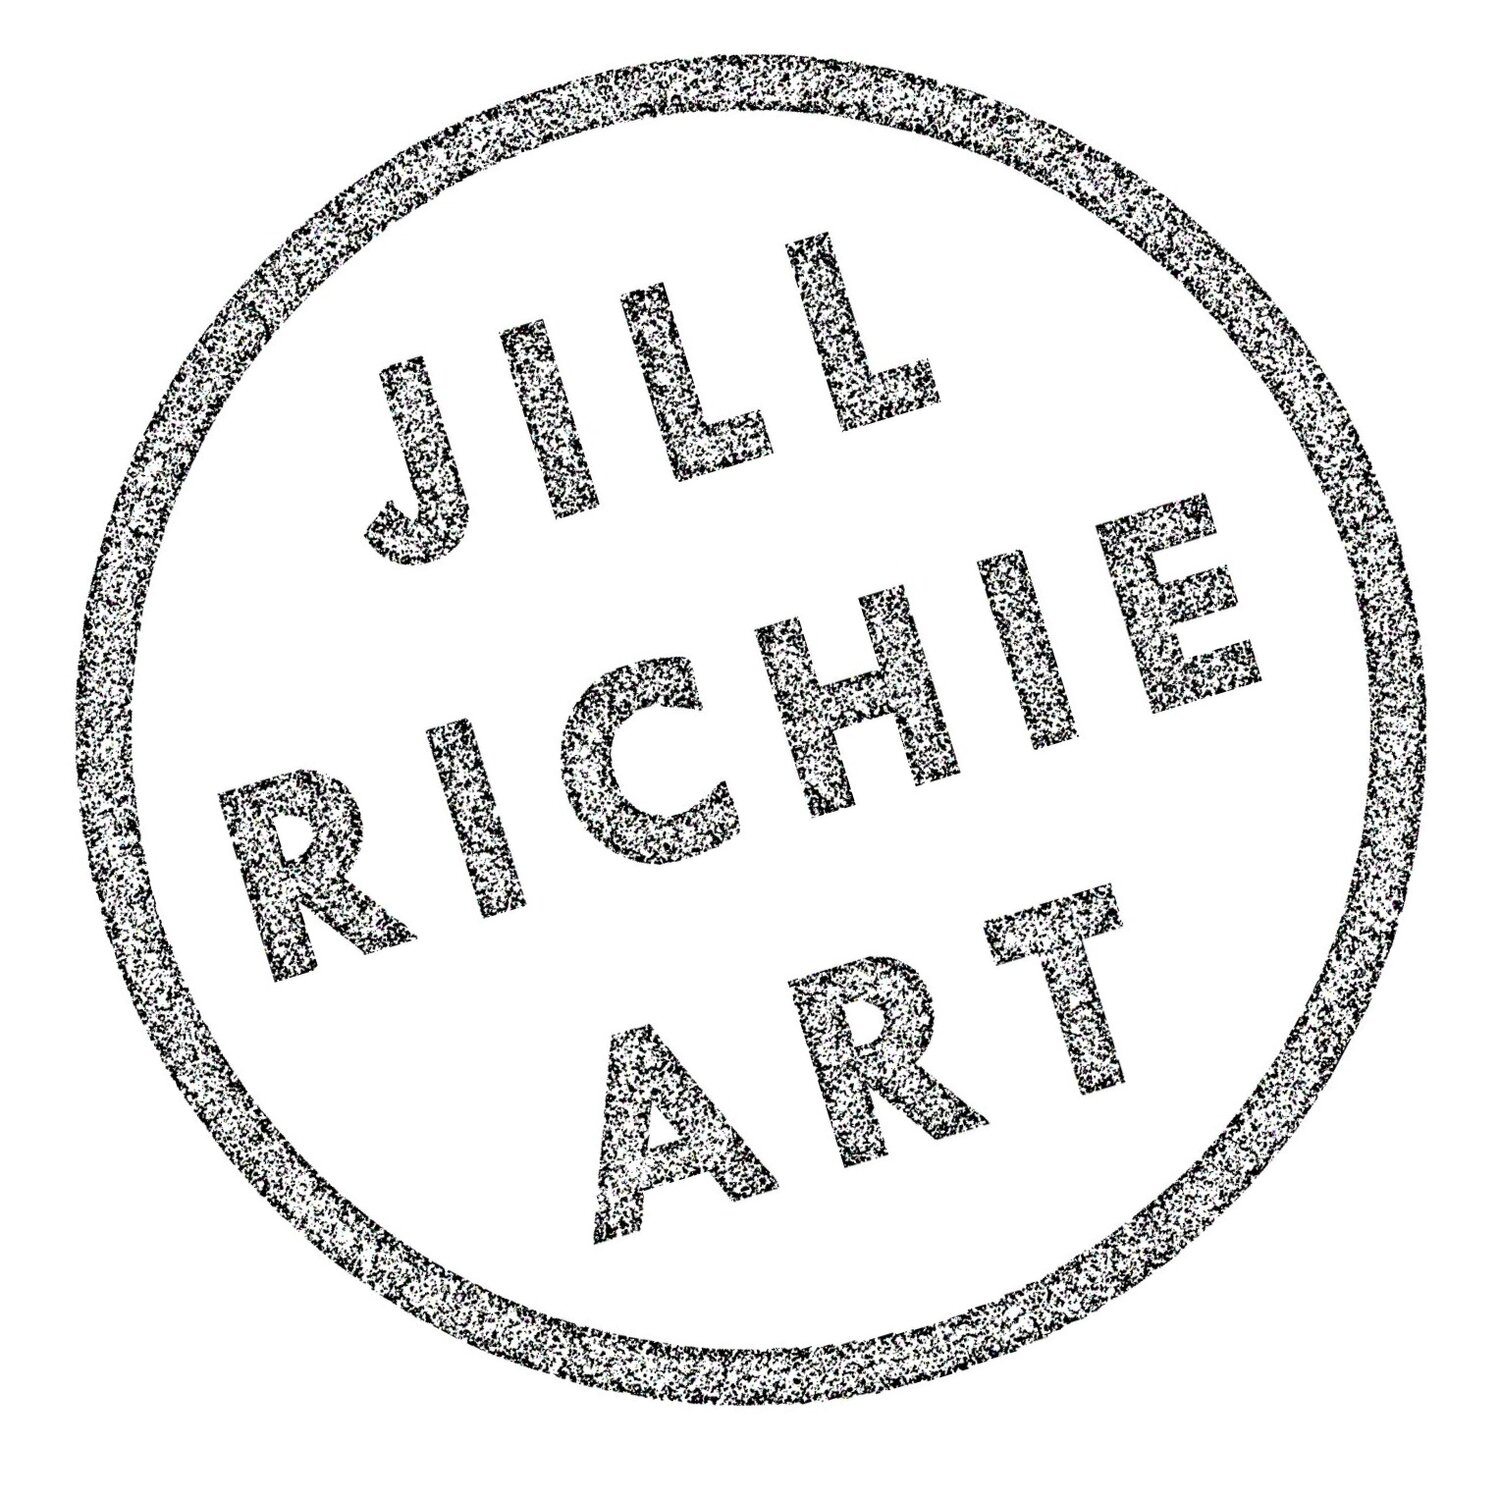 JILL RICHIE ART